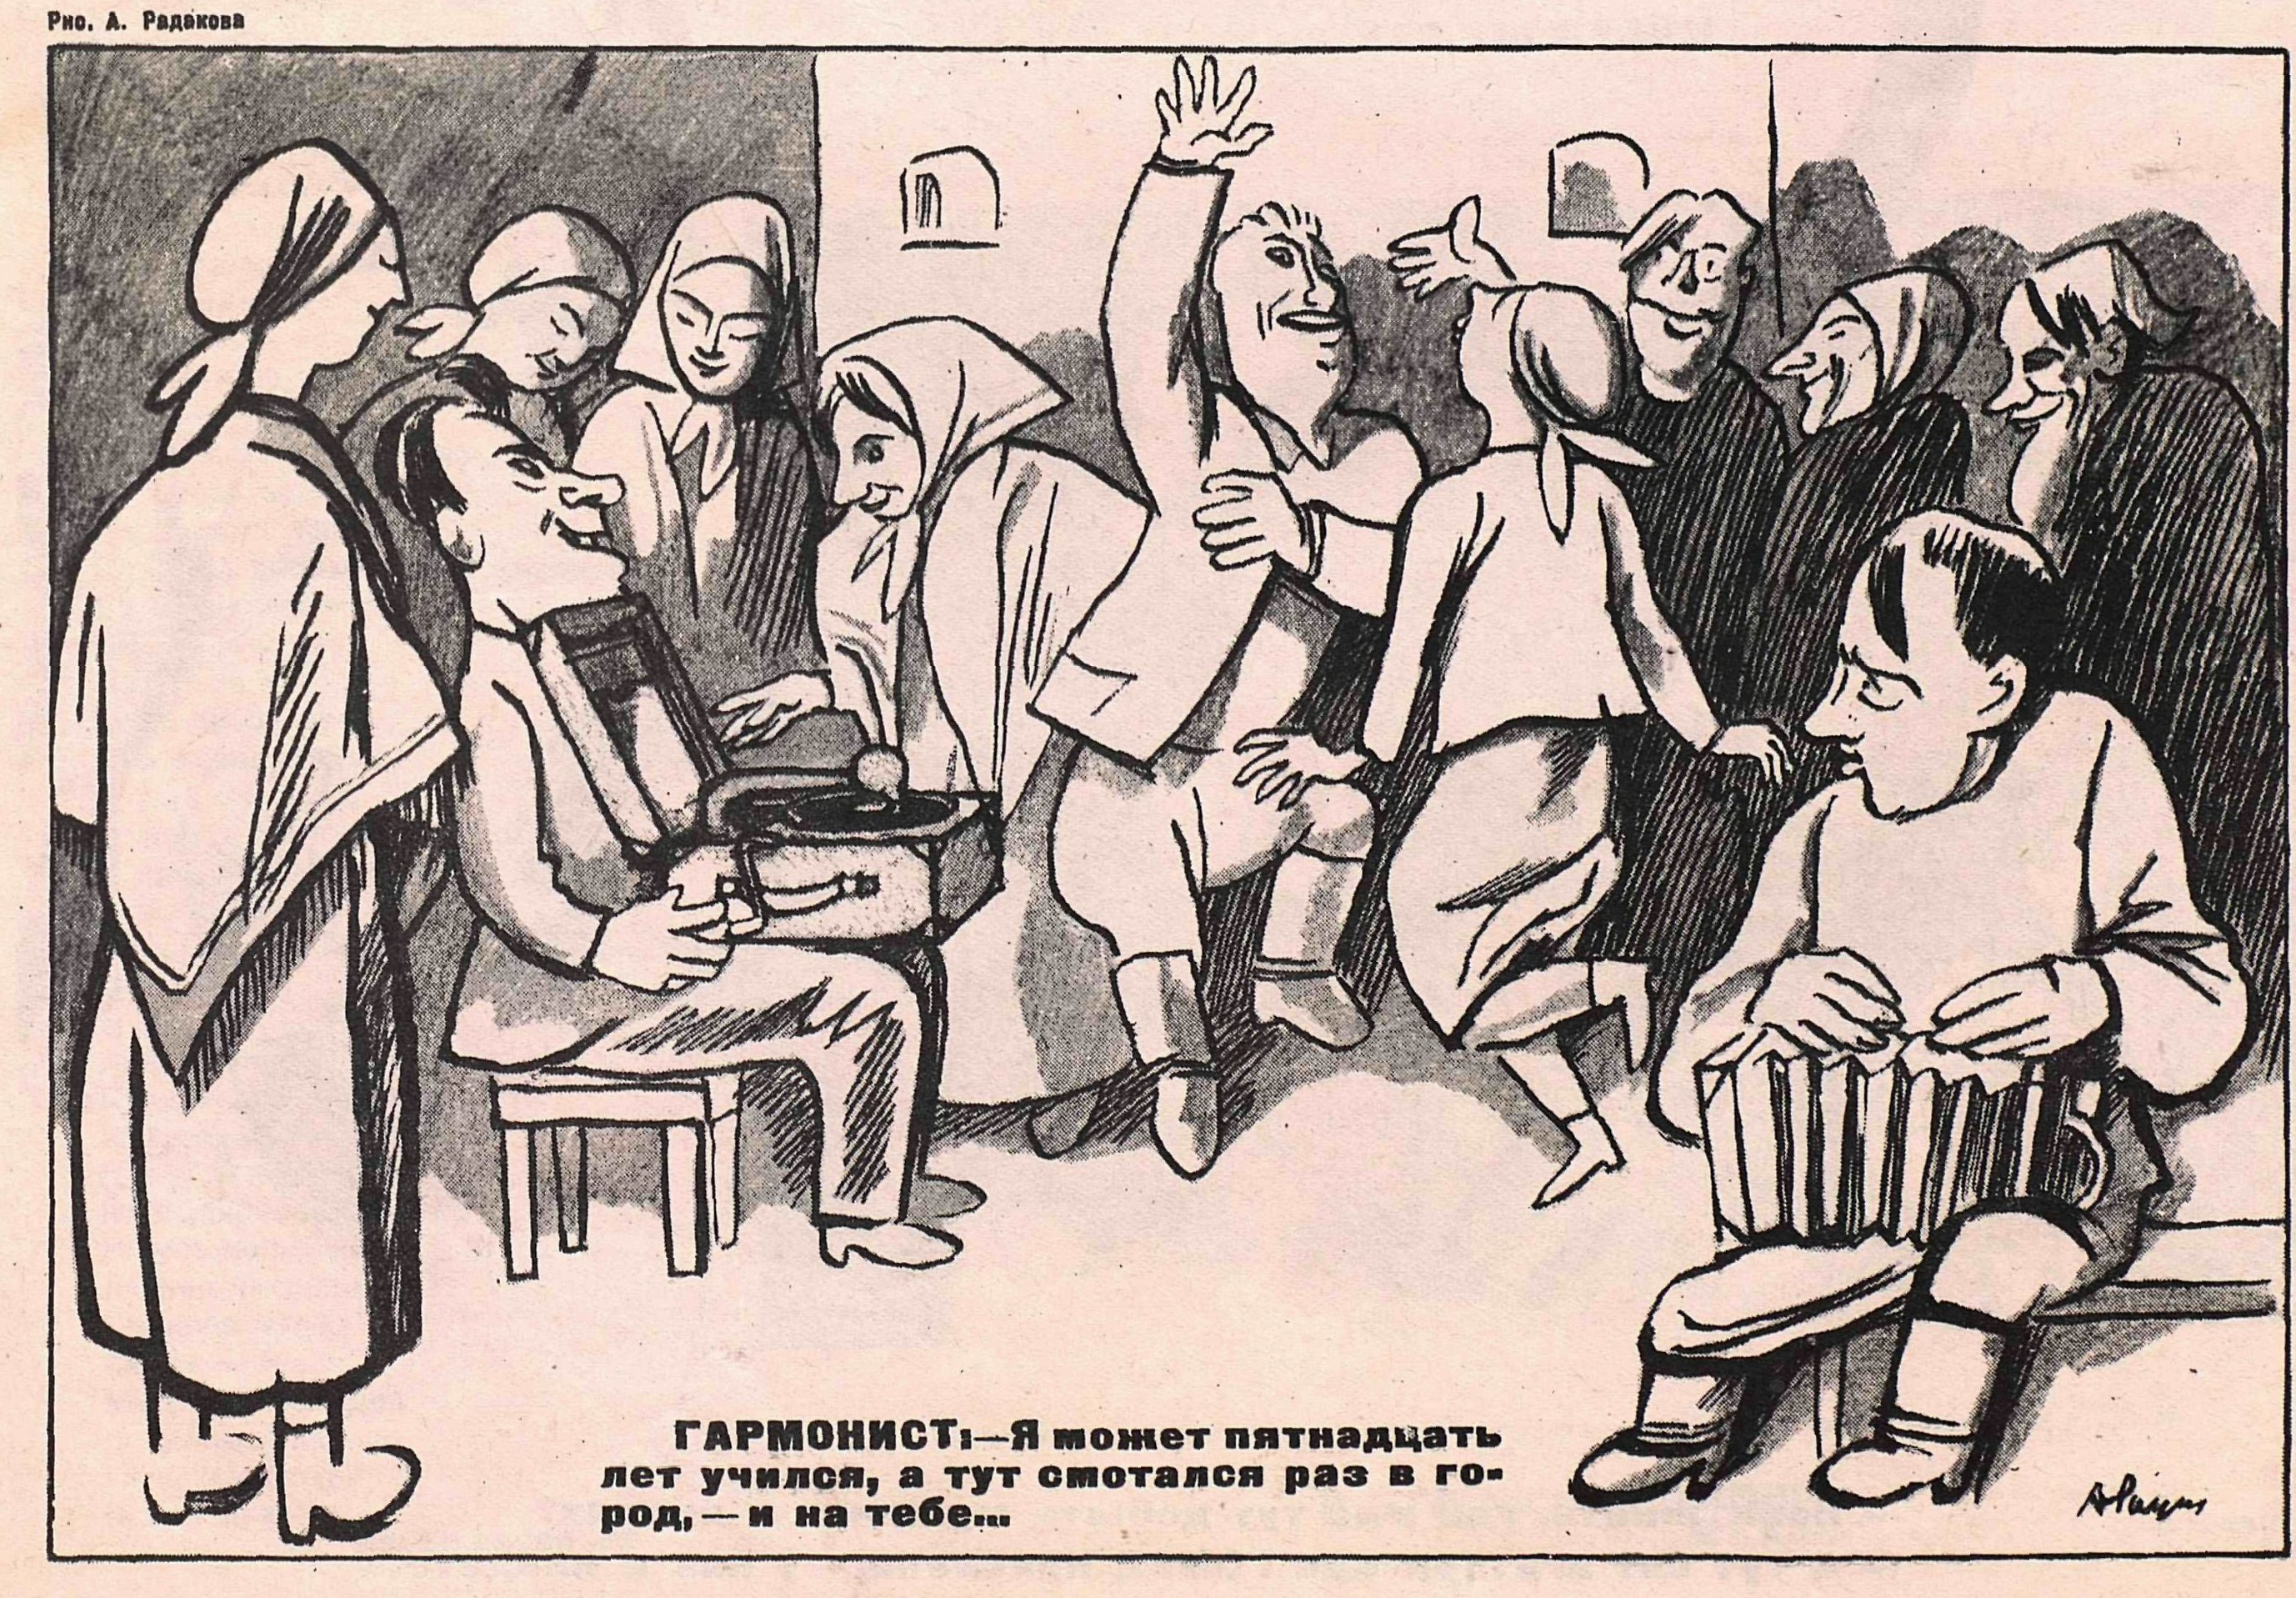 Карикатура: "Гармонист"